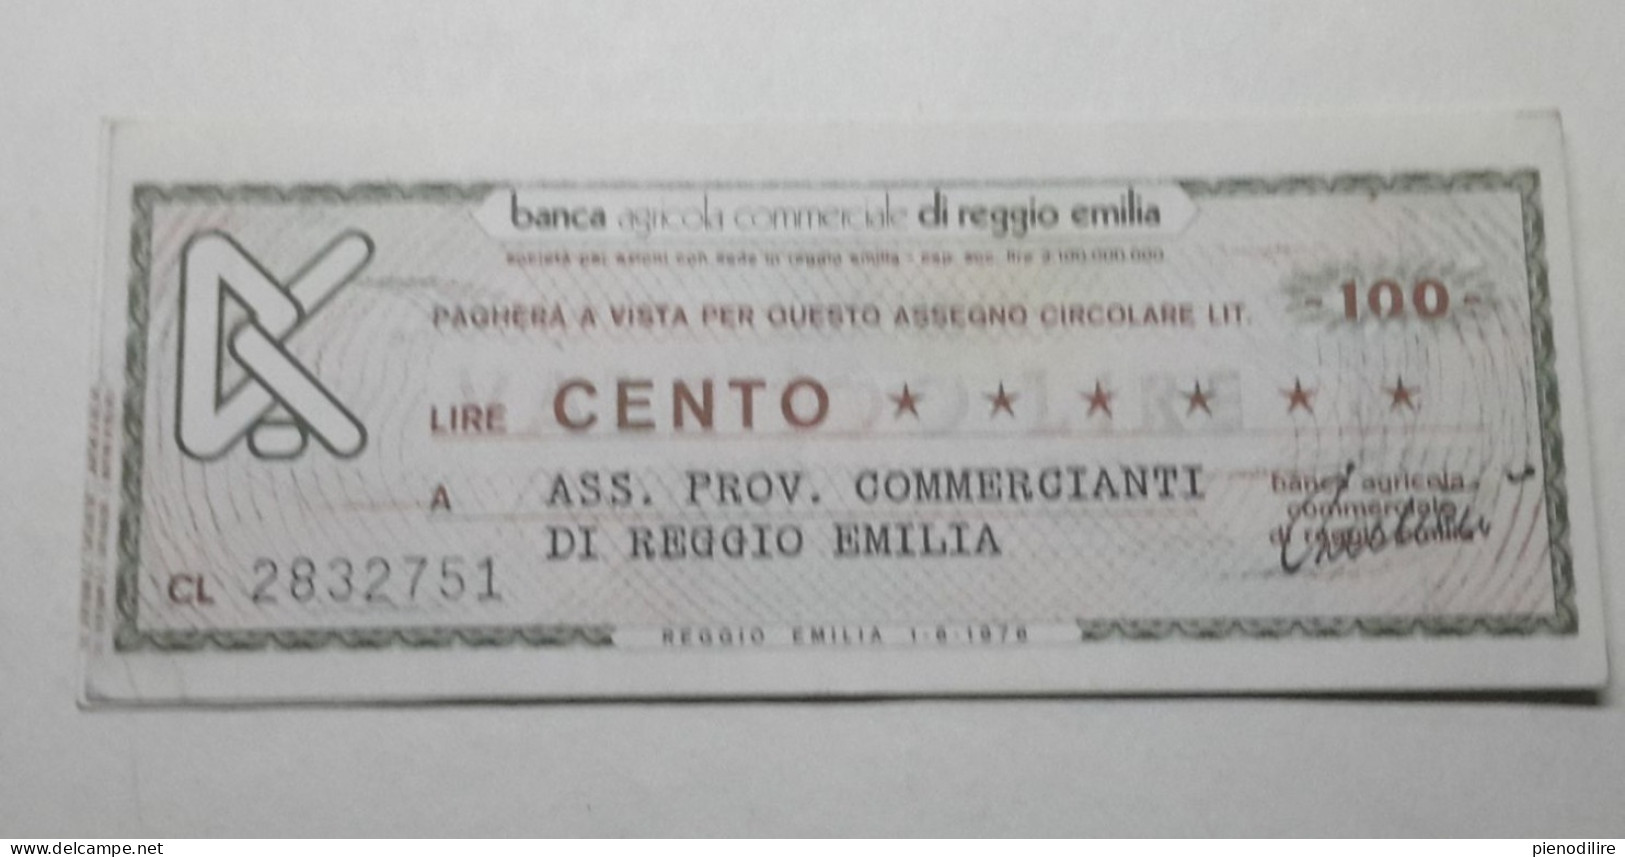 100 LIRE 1.6.1976 BANCA AGRICOLA COMMERCIALE REGGIO EMILIA (A.40) - [10] Checks And Mini-checks